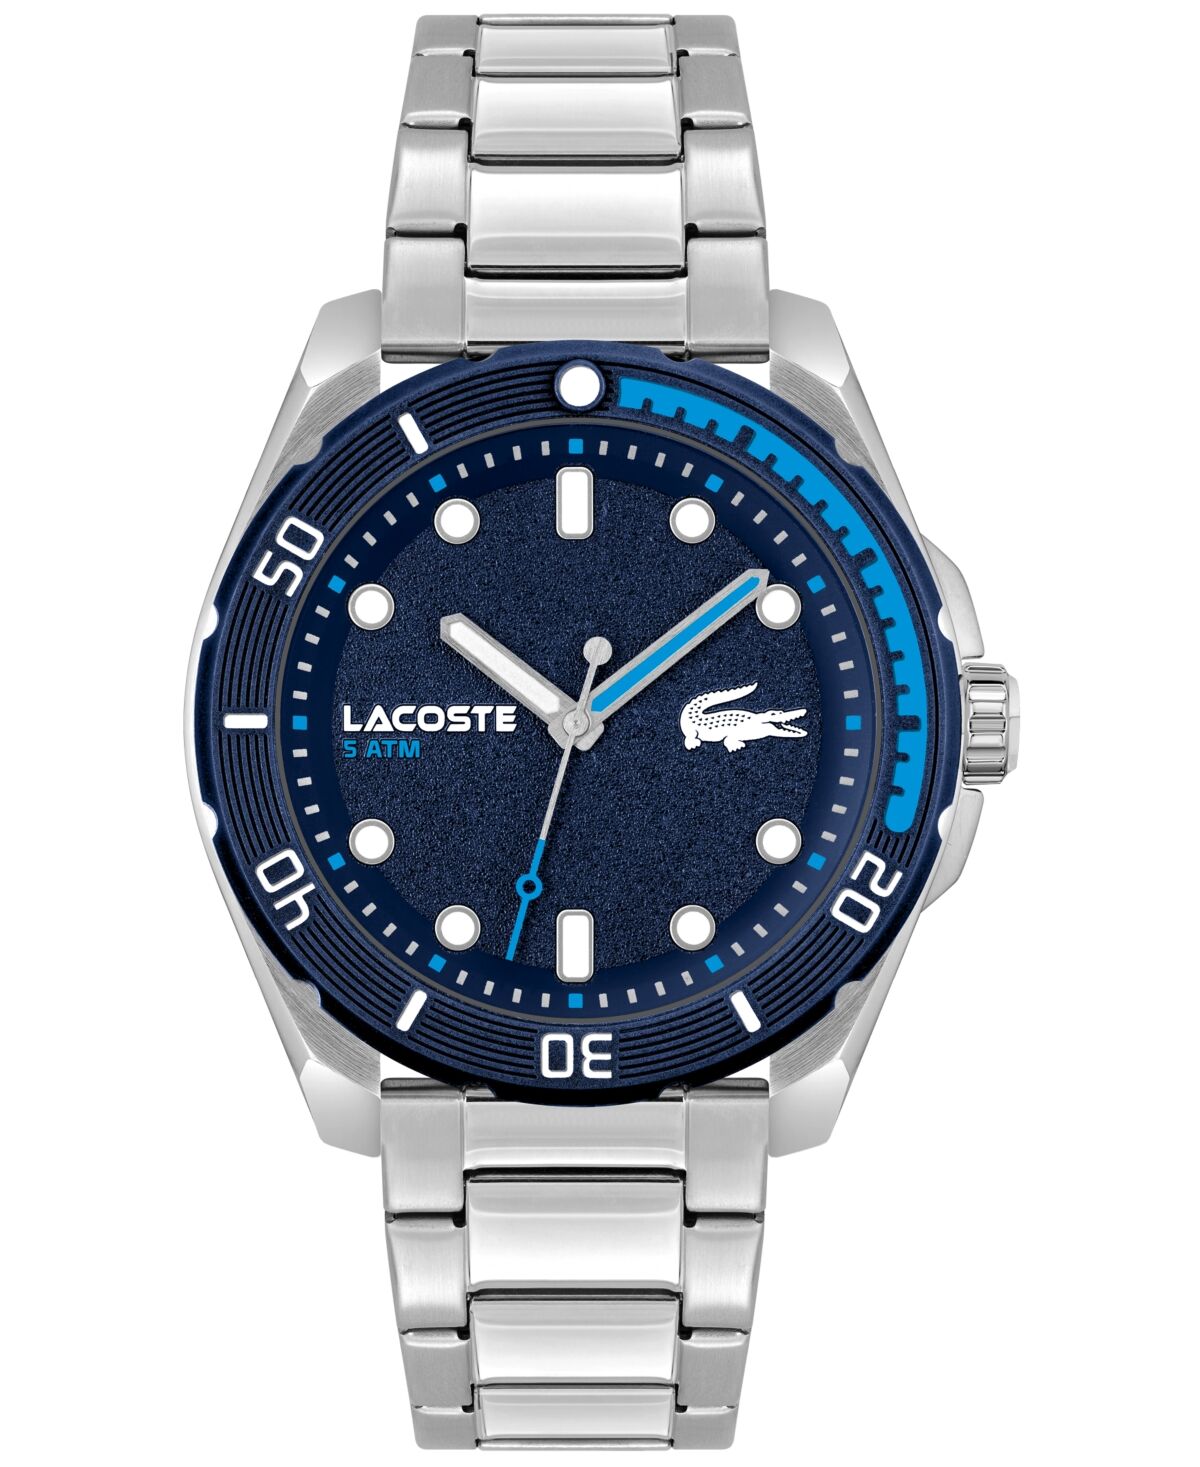 Lacoste Men's Finn Quartz Silver-Tone Stainless Steel Bracelet Watch 44mm - Silver